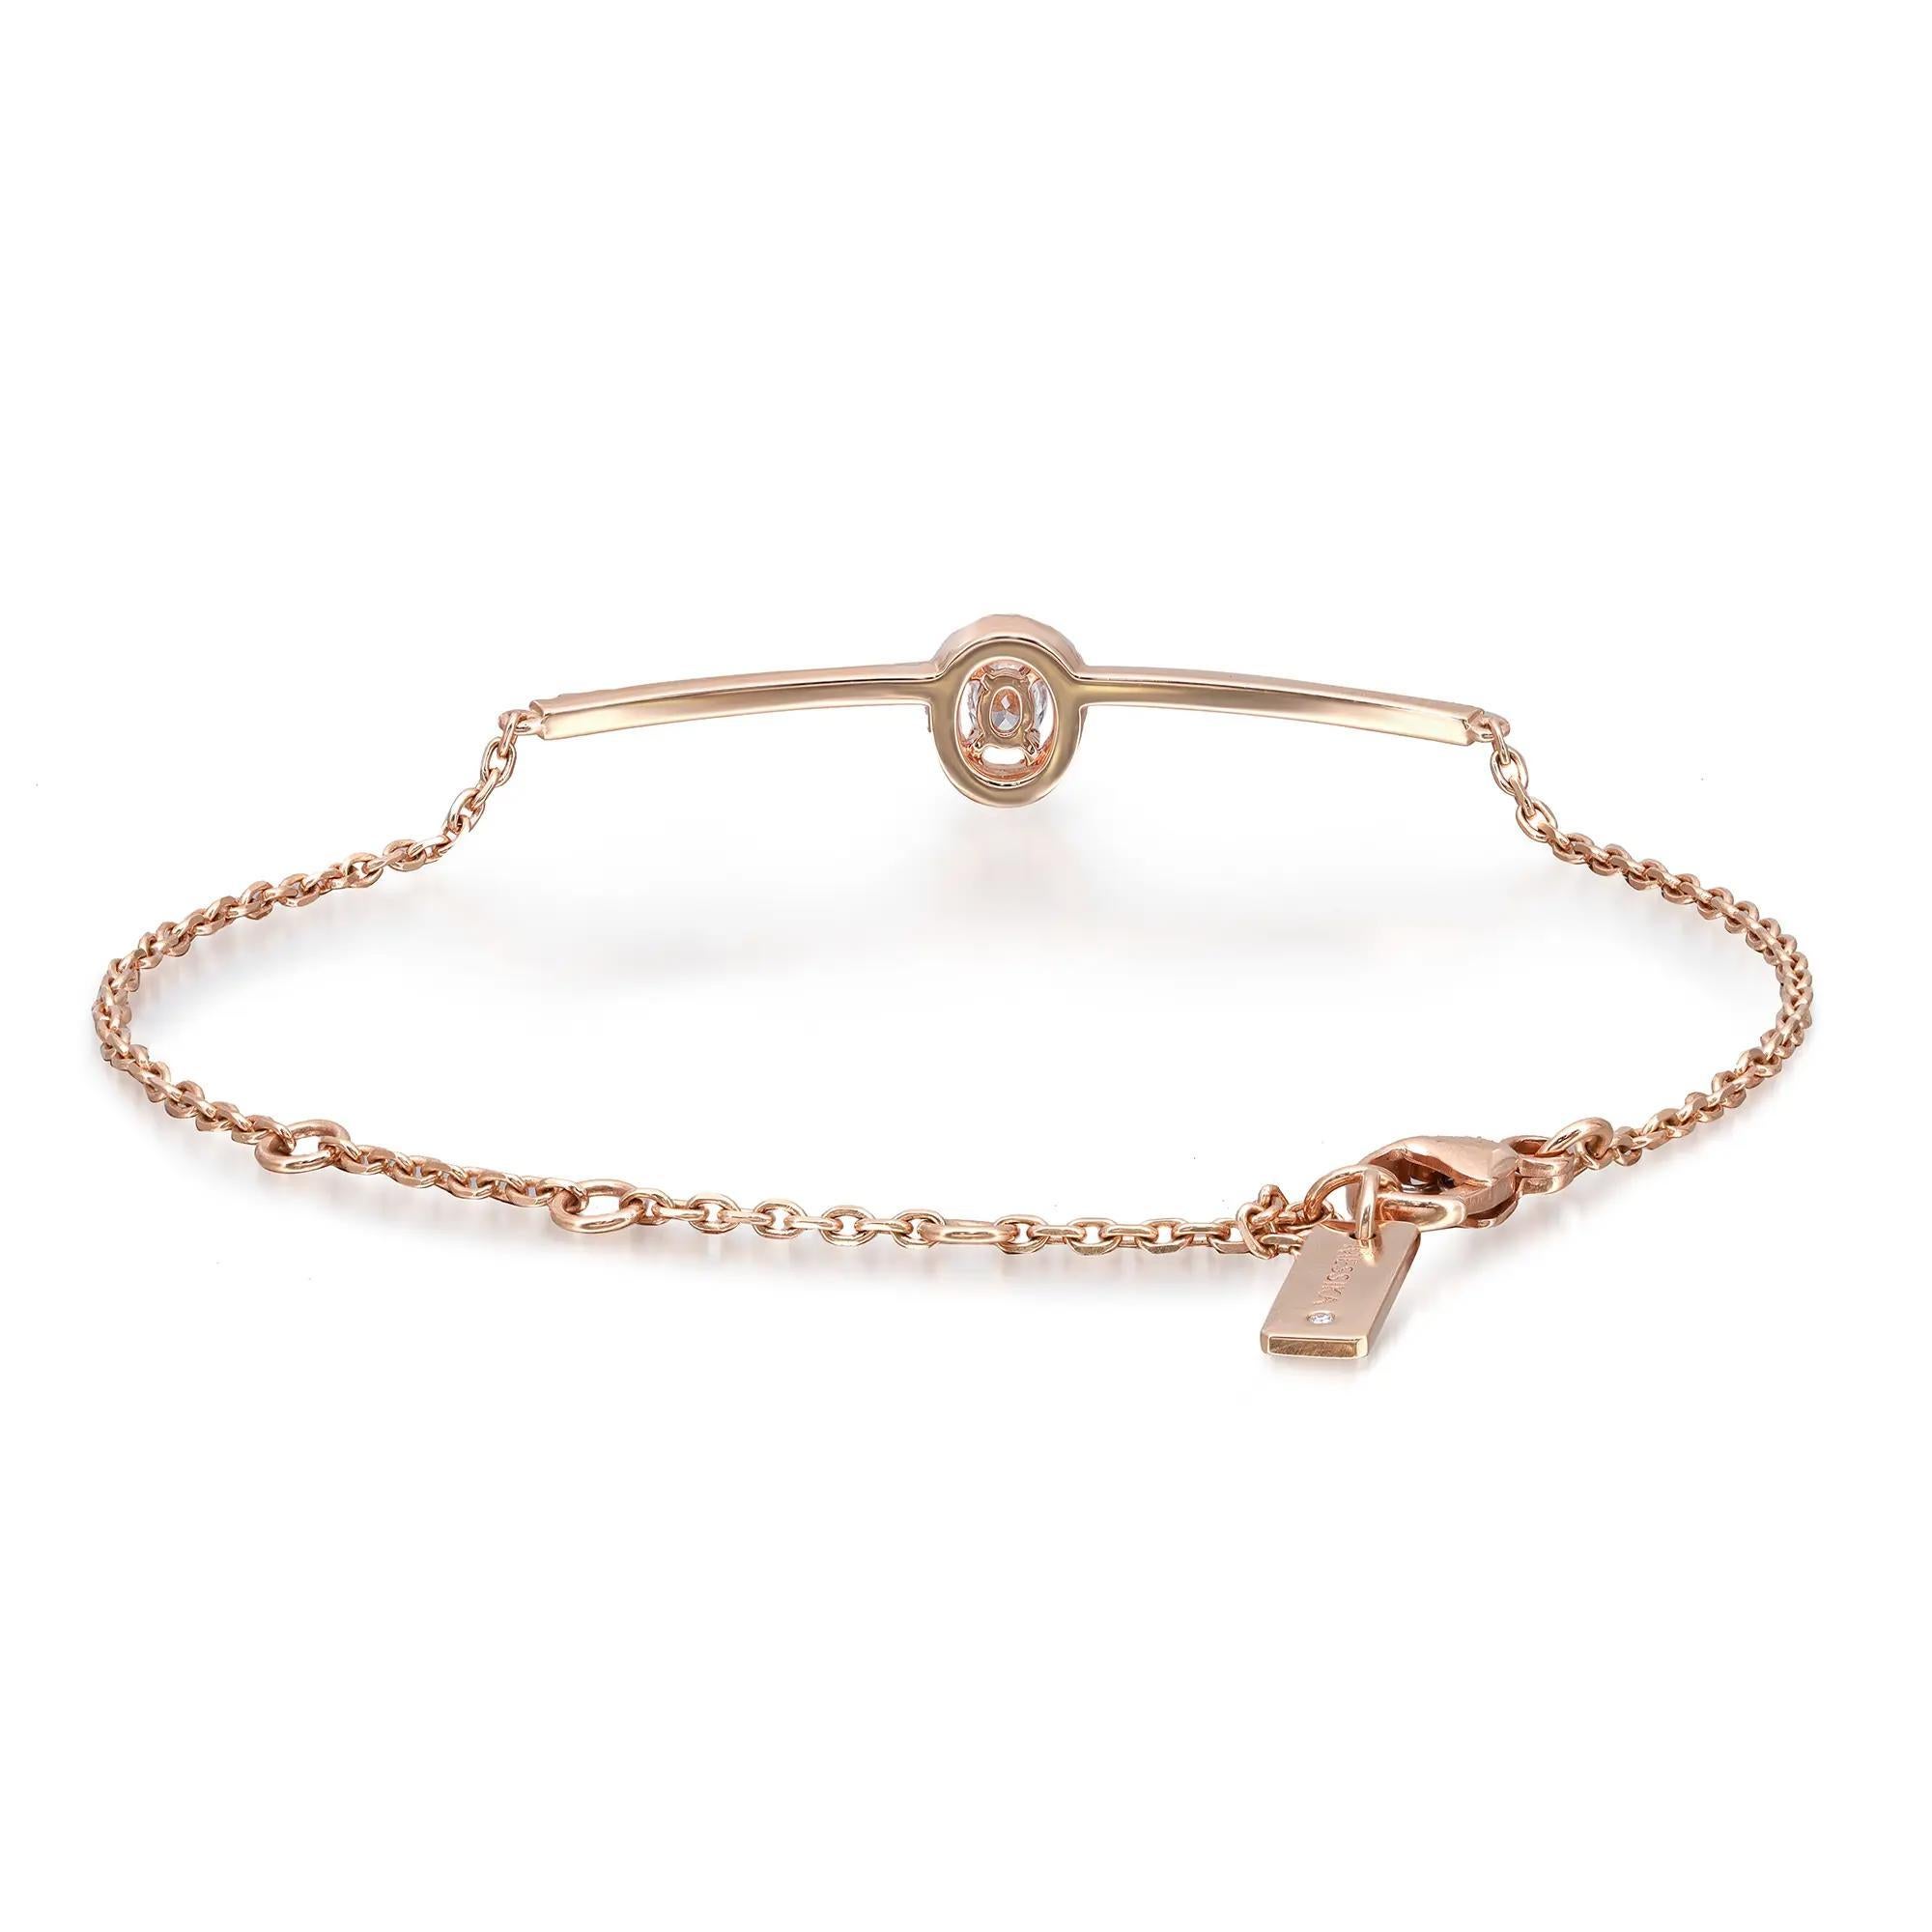 Eleg, cet élégant bracelet à chaîne en diamants Messika Glam'Azone est parfait pour un look de tous les jours. Fabriqué en or rose 18 carats hautement poli. Il se compose d'un diamant ovale serti et d'un halo de diamants ronds au centre, accentué